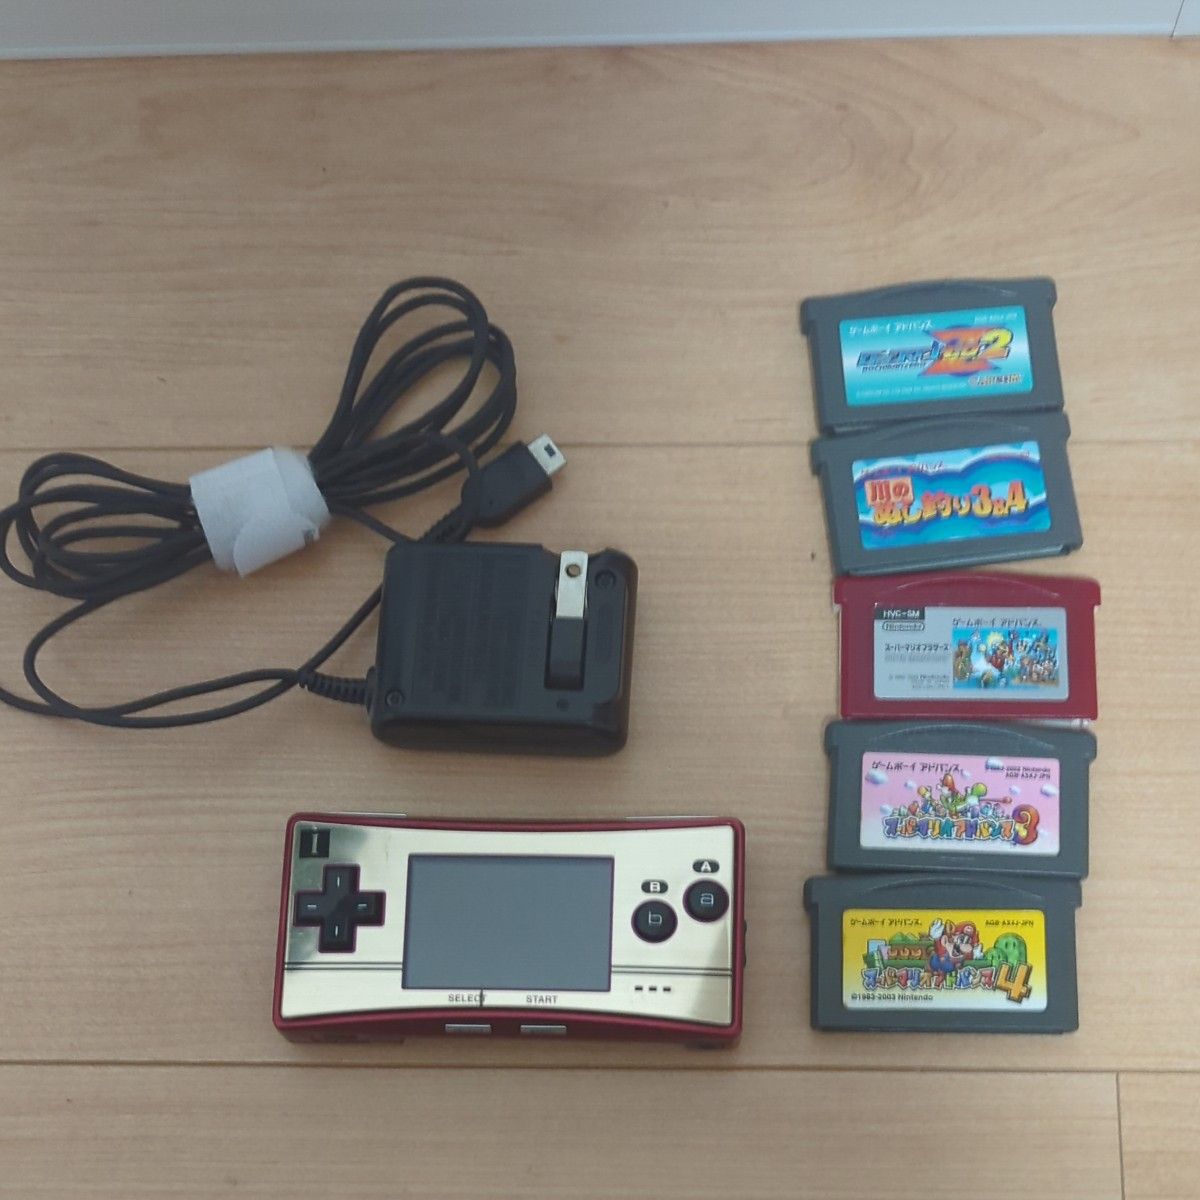 ファミコンカラー ゲームボーイミクロ 任天堂 ニンテンドー Nintendo GAME BOY micro ファミコンバージョン